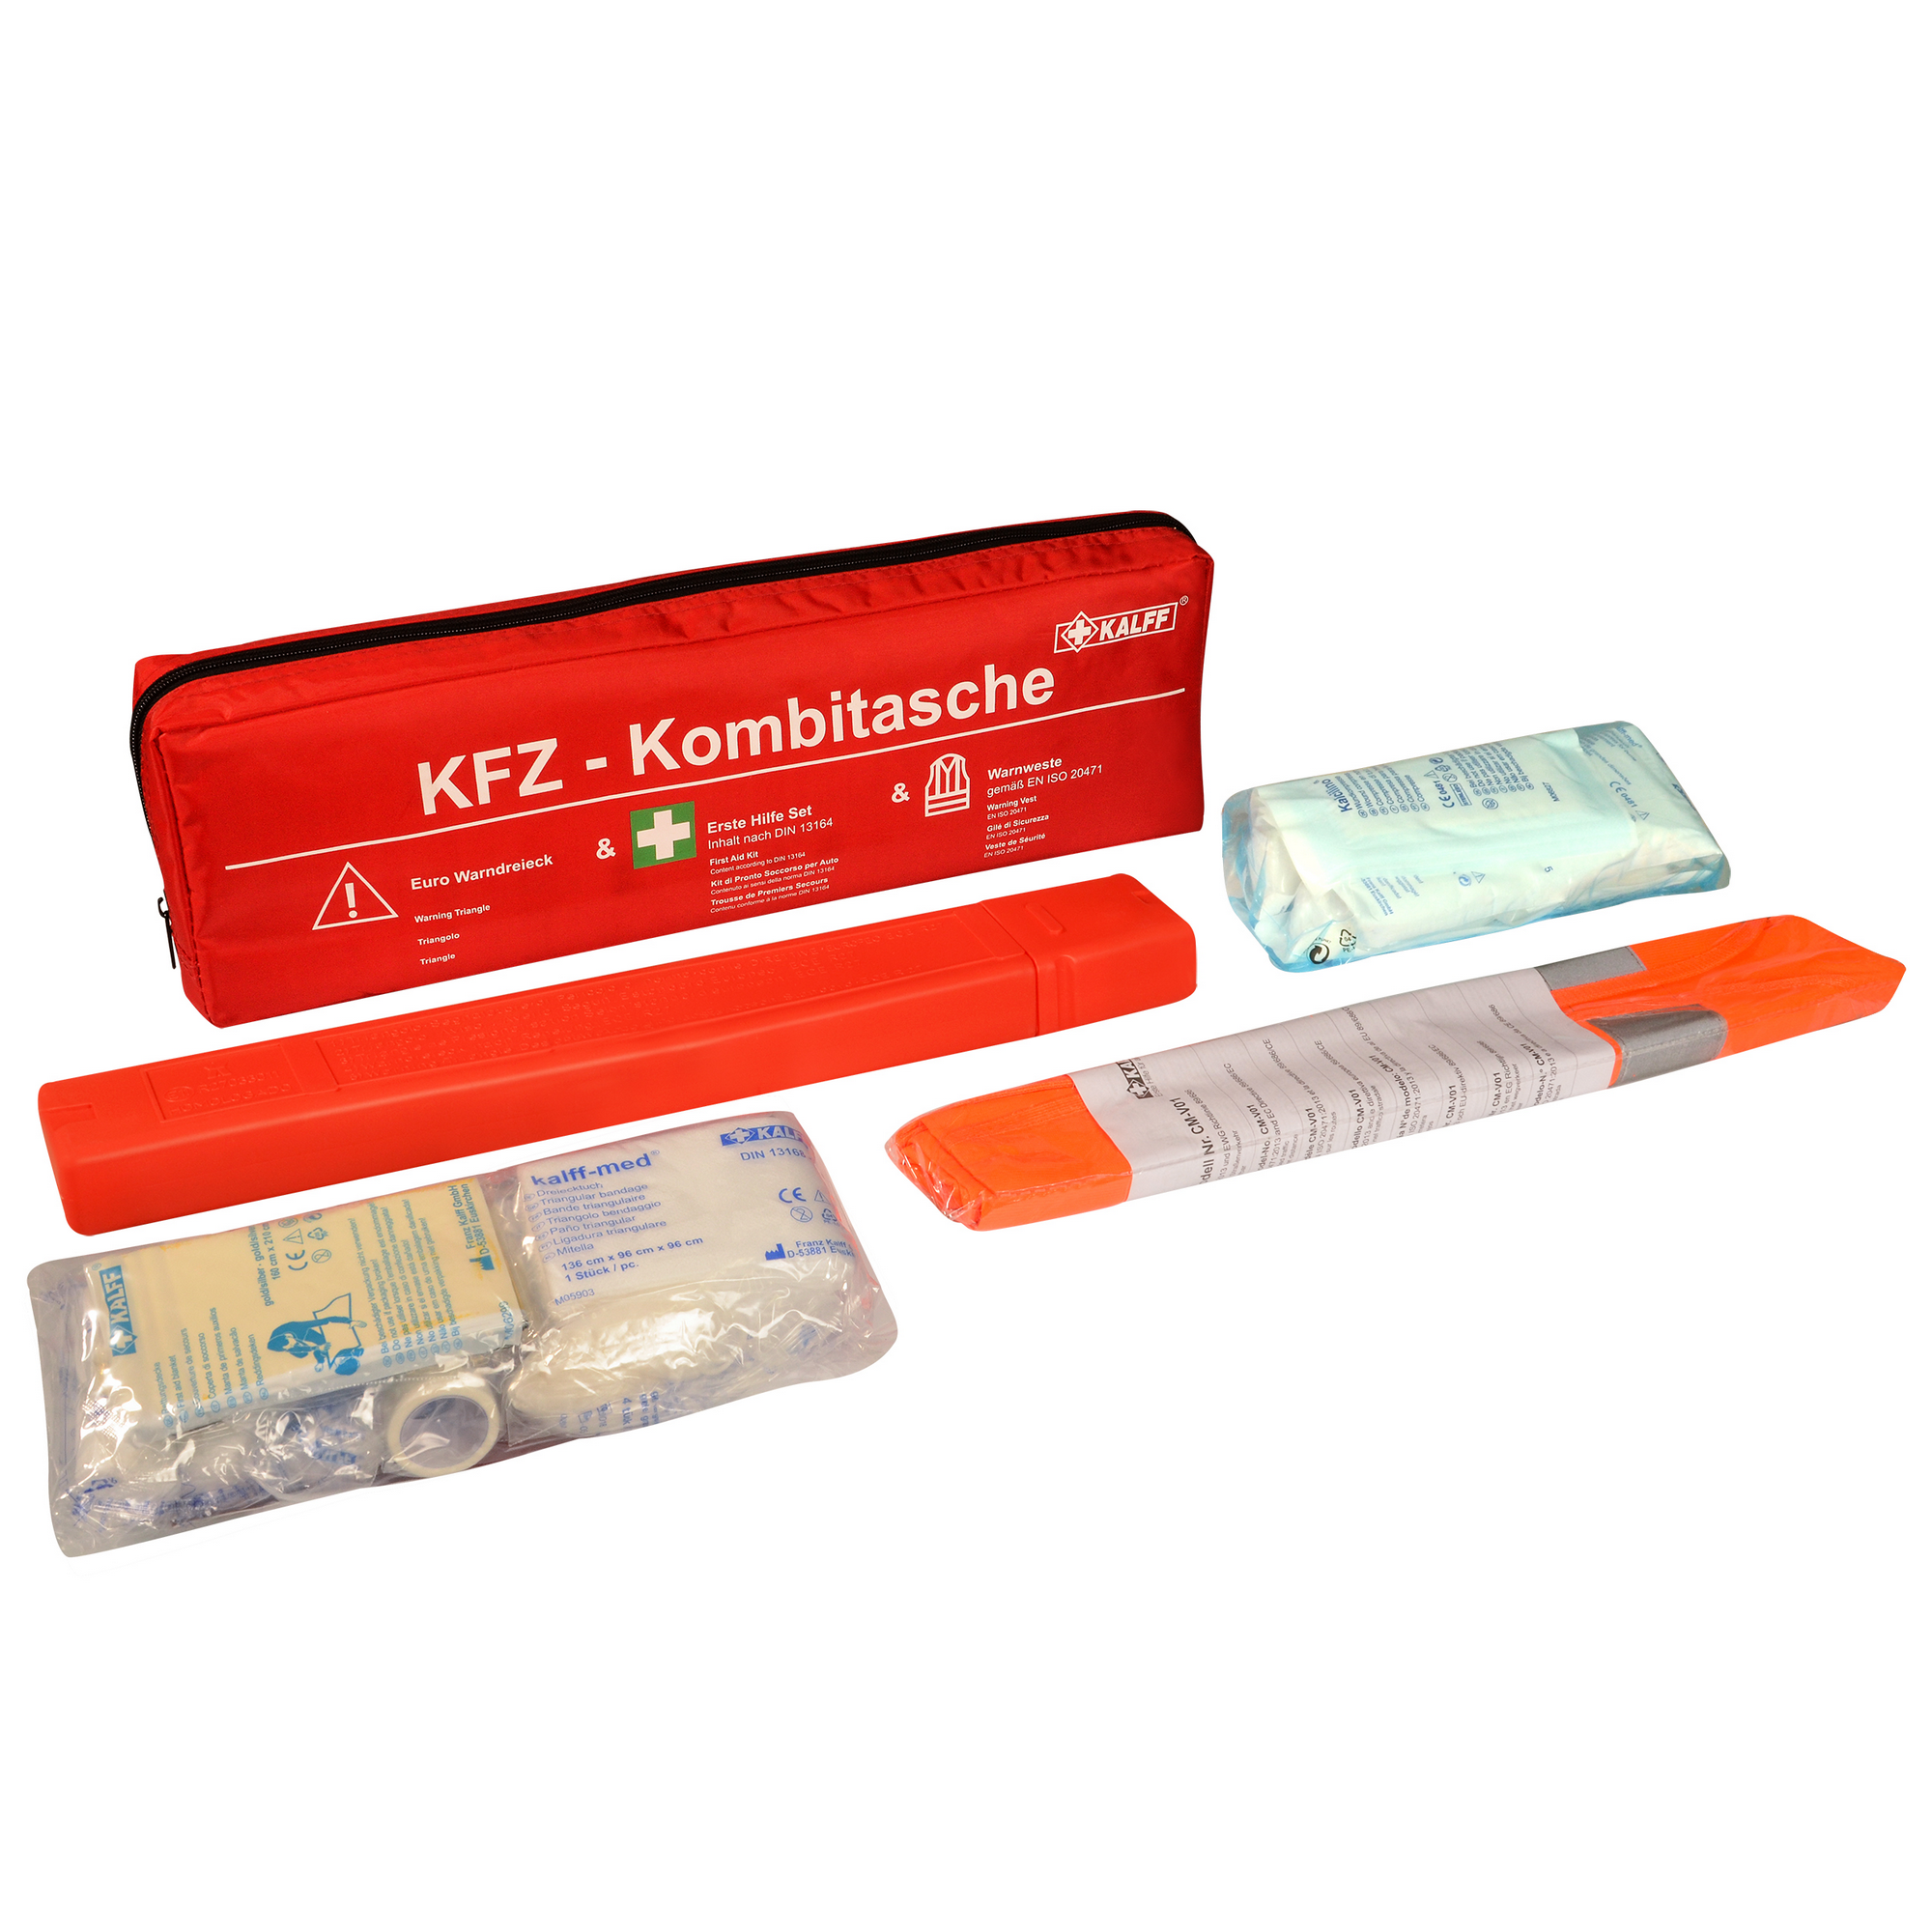 PKW KFZ Kombitasche Warndreieck Warnweste Verbandskasten 3 in 1